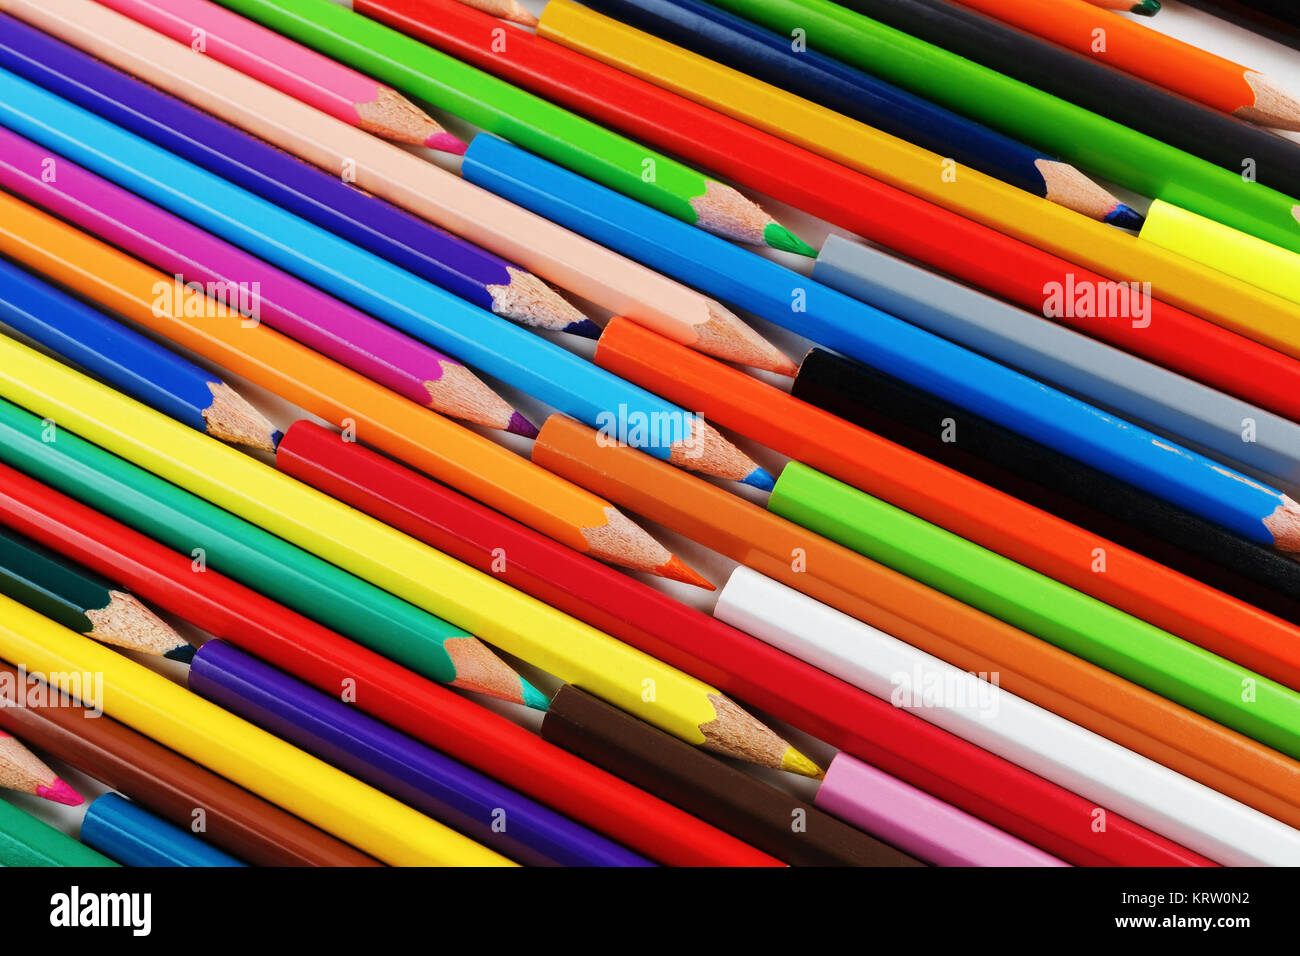 Bright colored pencils Stock Photo - Alamy